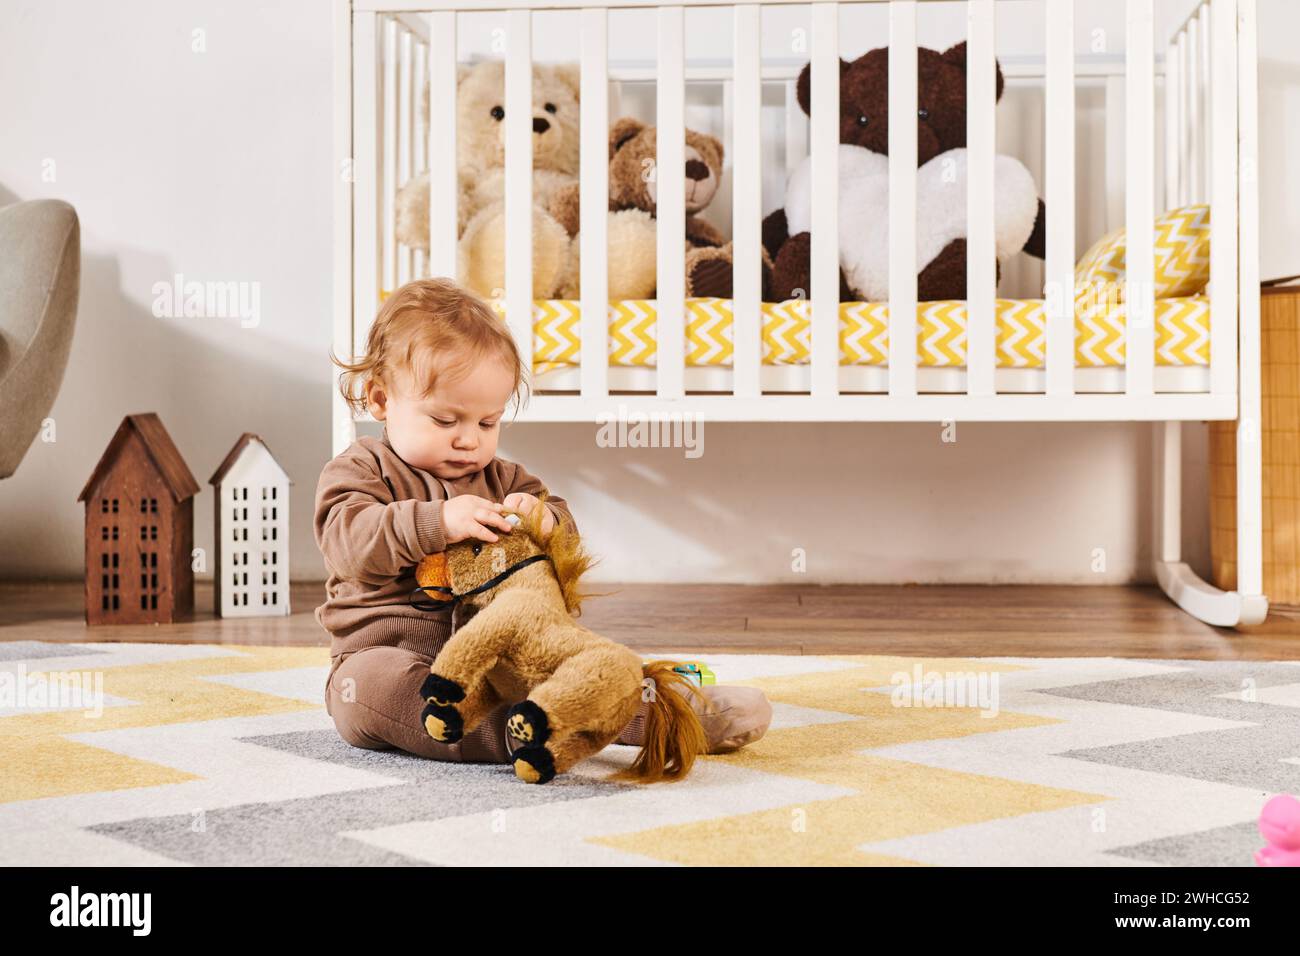 Niedlicher kleiner Junge, der auf dem Boden sitzt und mit einem Spielzeugpferd in der Nähe des Kinderbetts in einem gemütlichen Kinderzimmer spielt Stockfoto